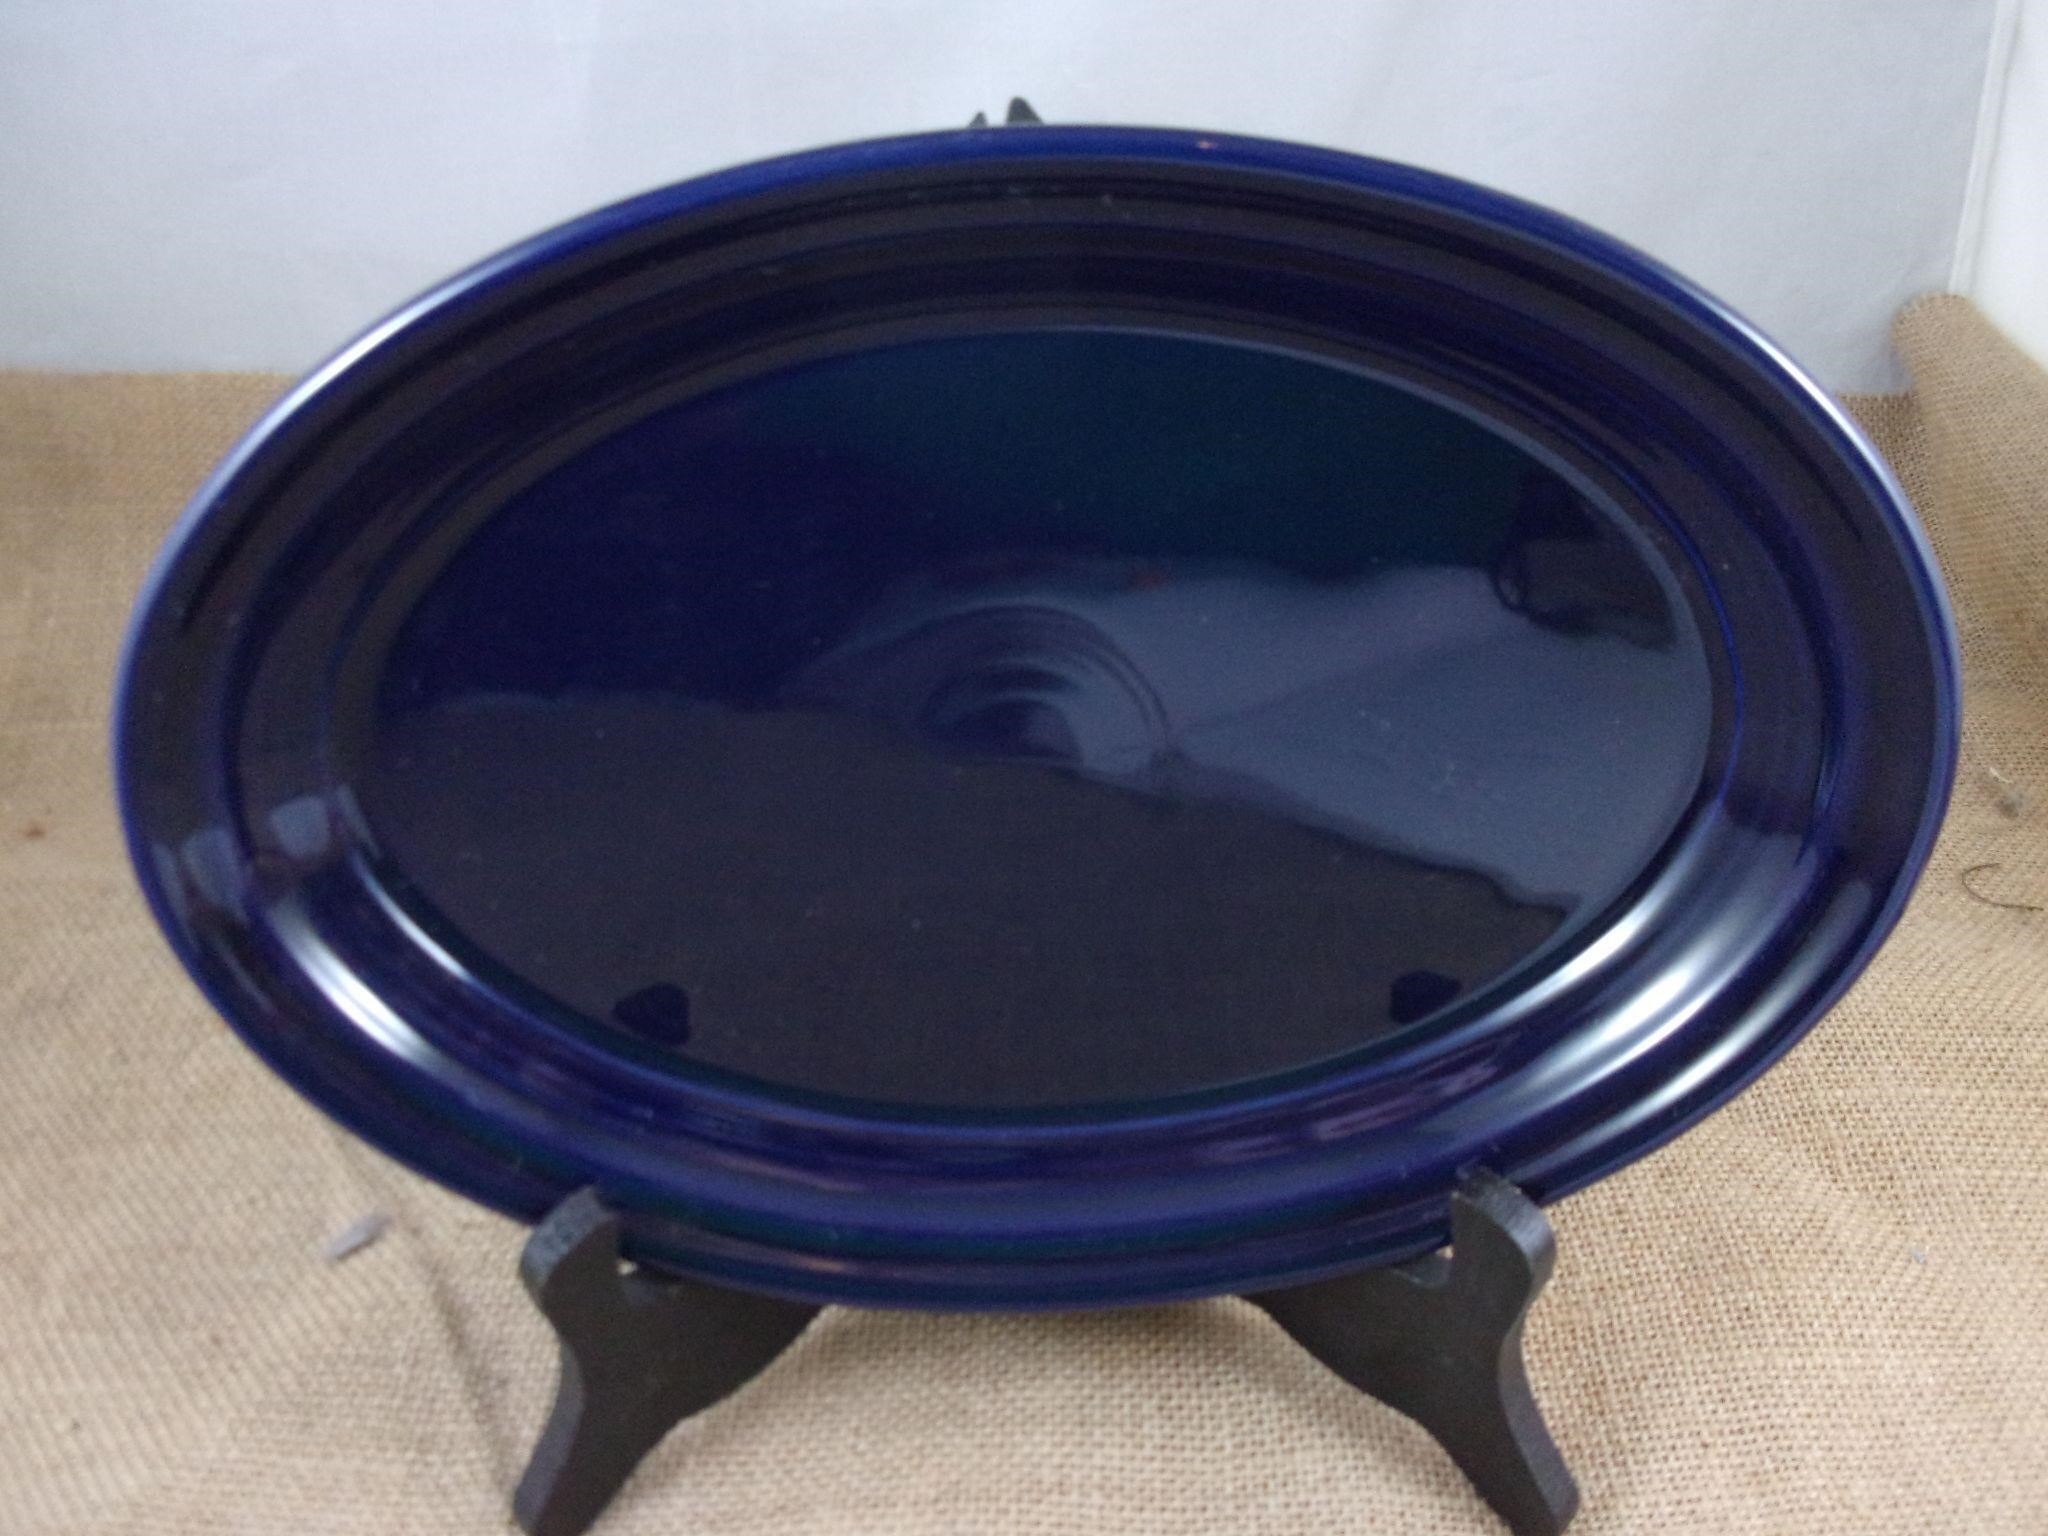 Fiesta Cobalt Small Oval Platter - NEW